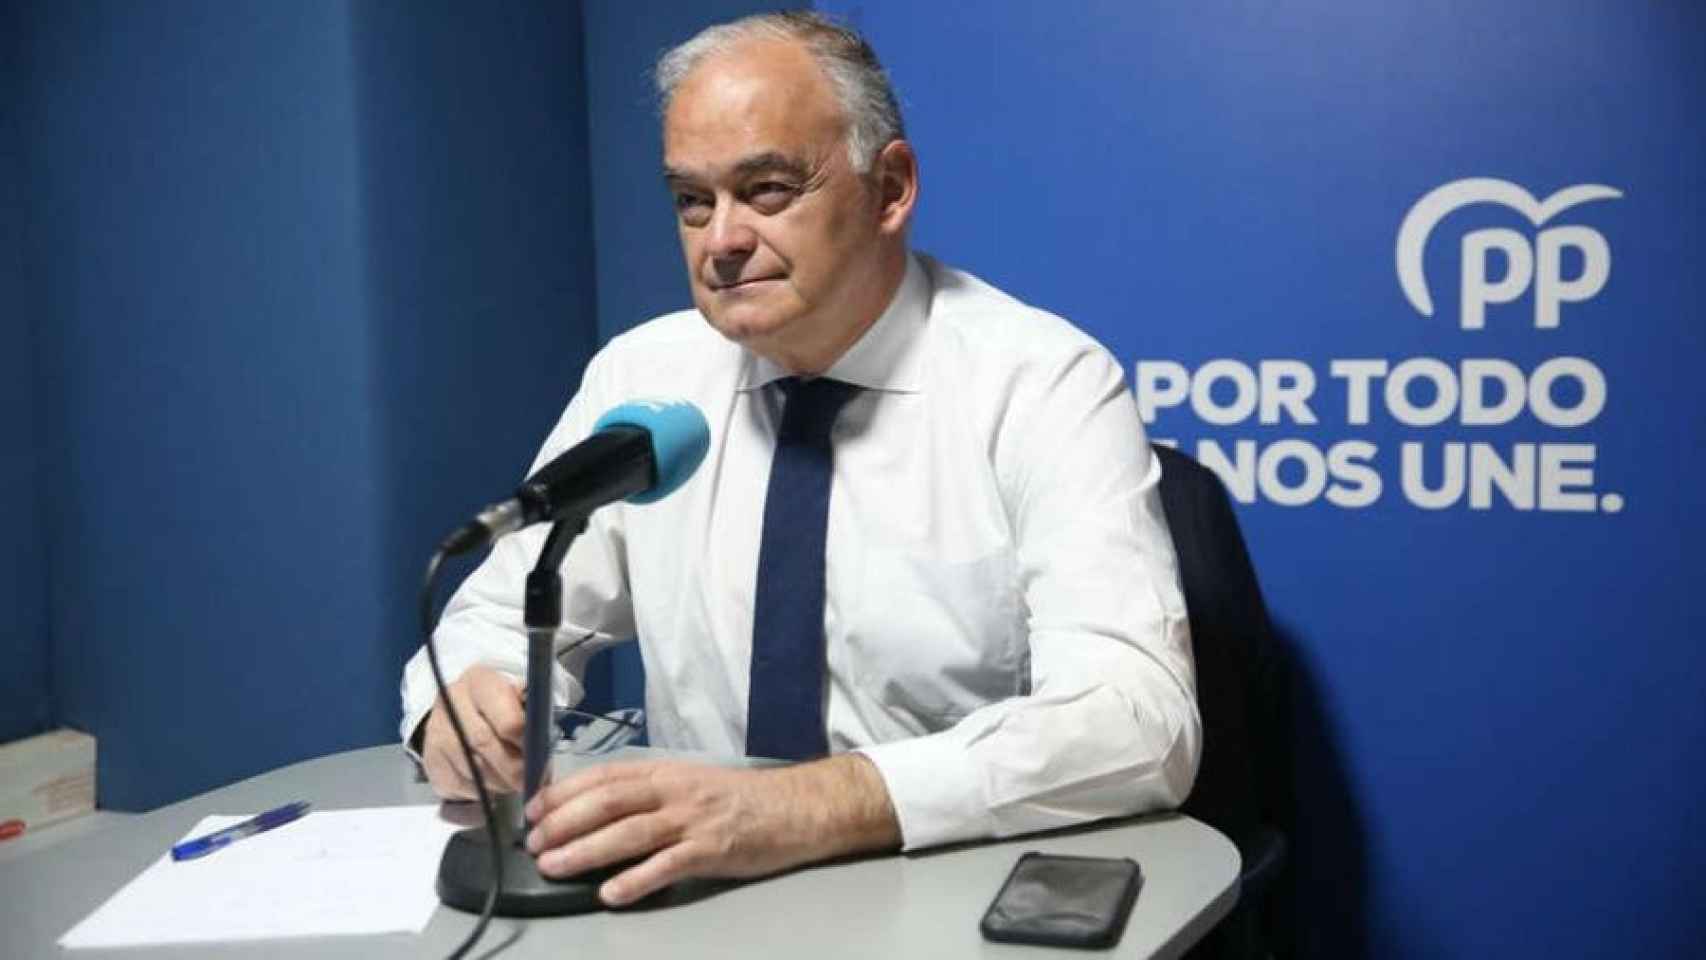 Esteban González Pons, vicesecretario de Relaciones Institucionales del Partido Popular.